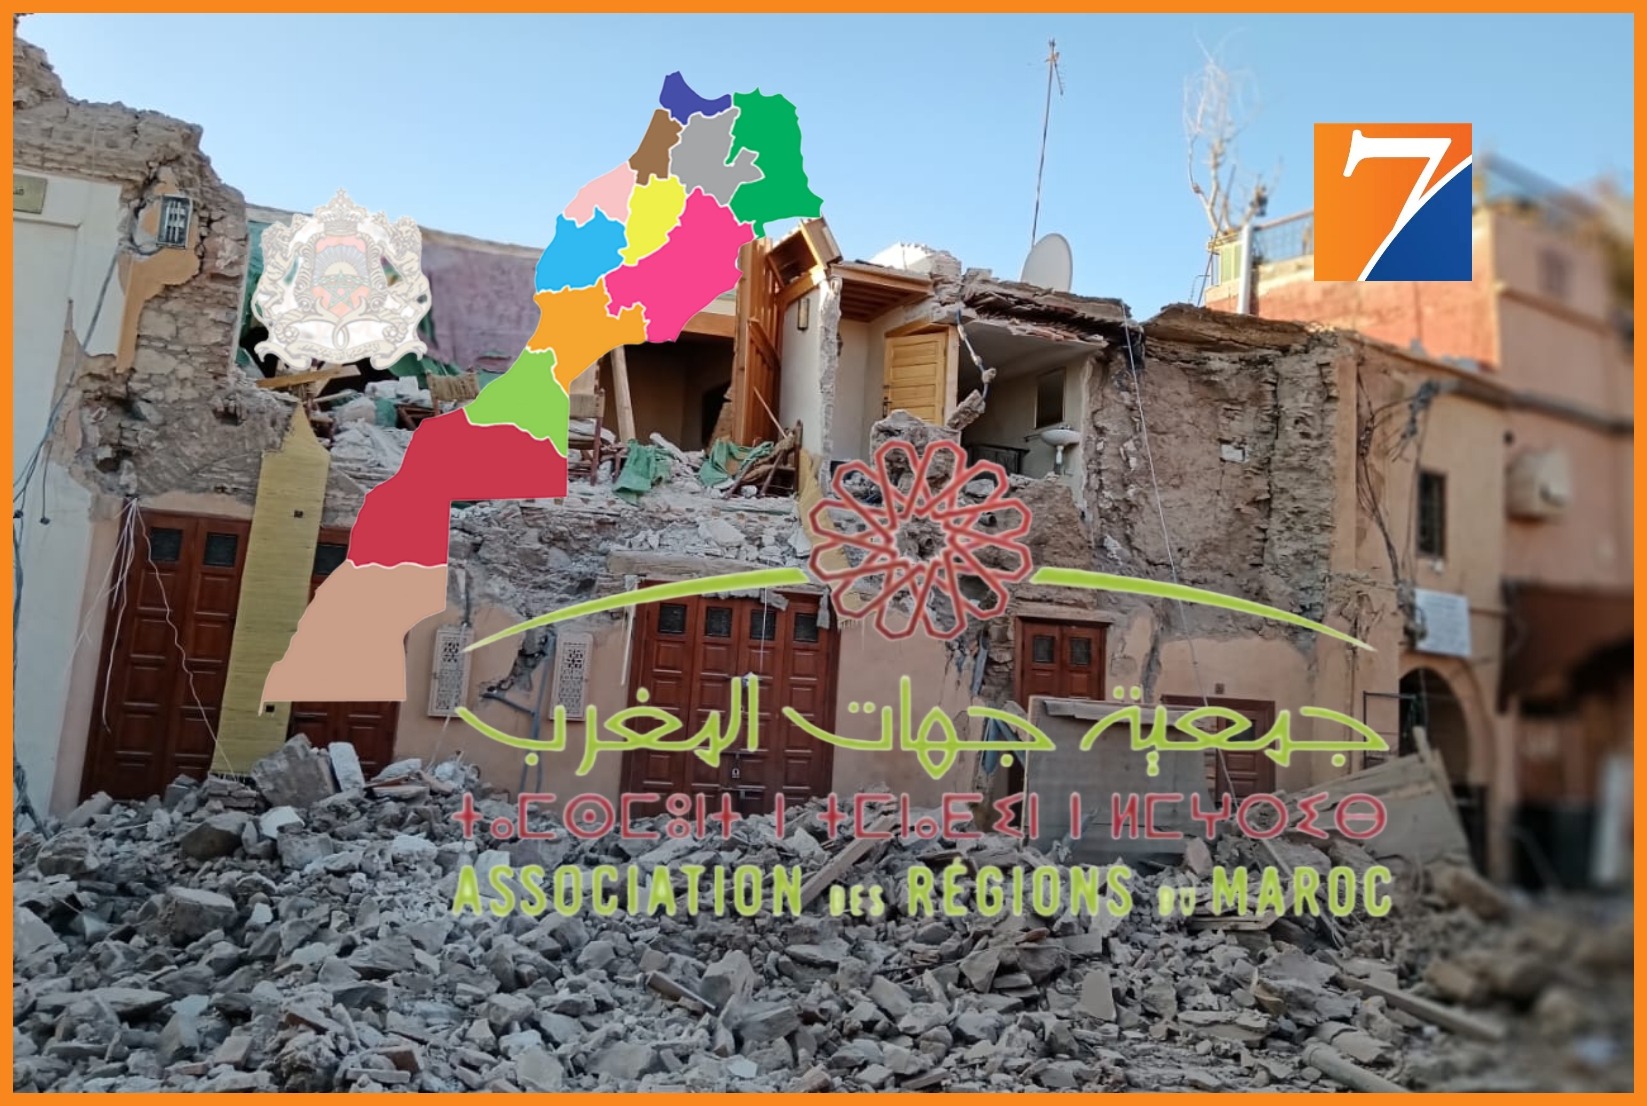  جمعية جهات المغرب تخصص 100 مليار سنتيم  للمساهمة في صندوق الزلزال.